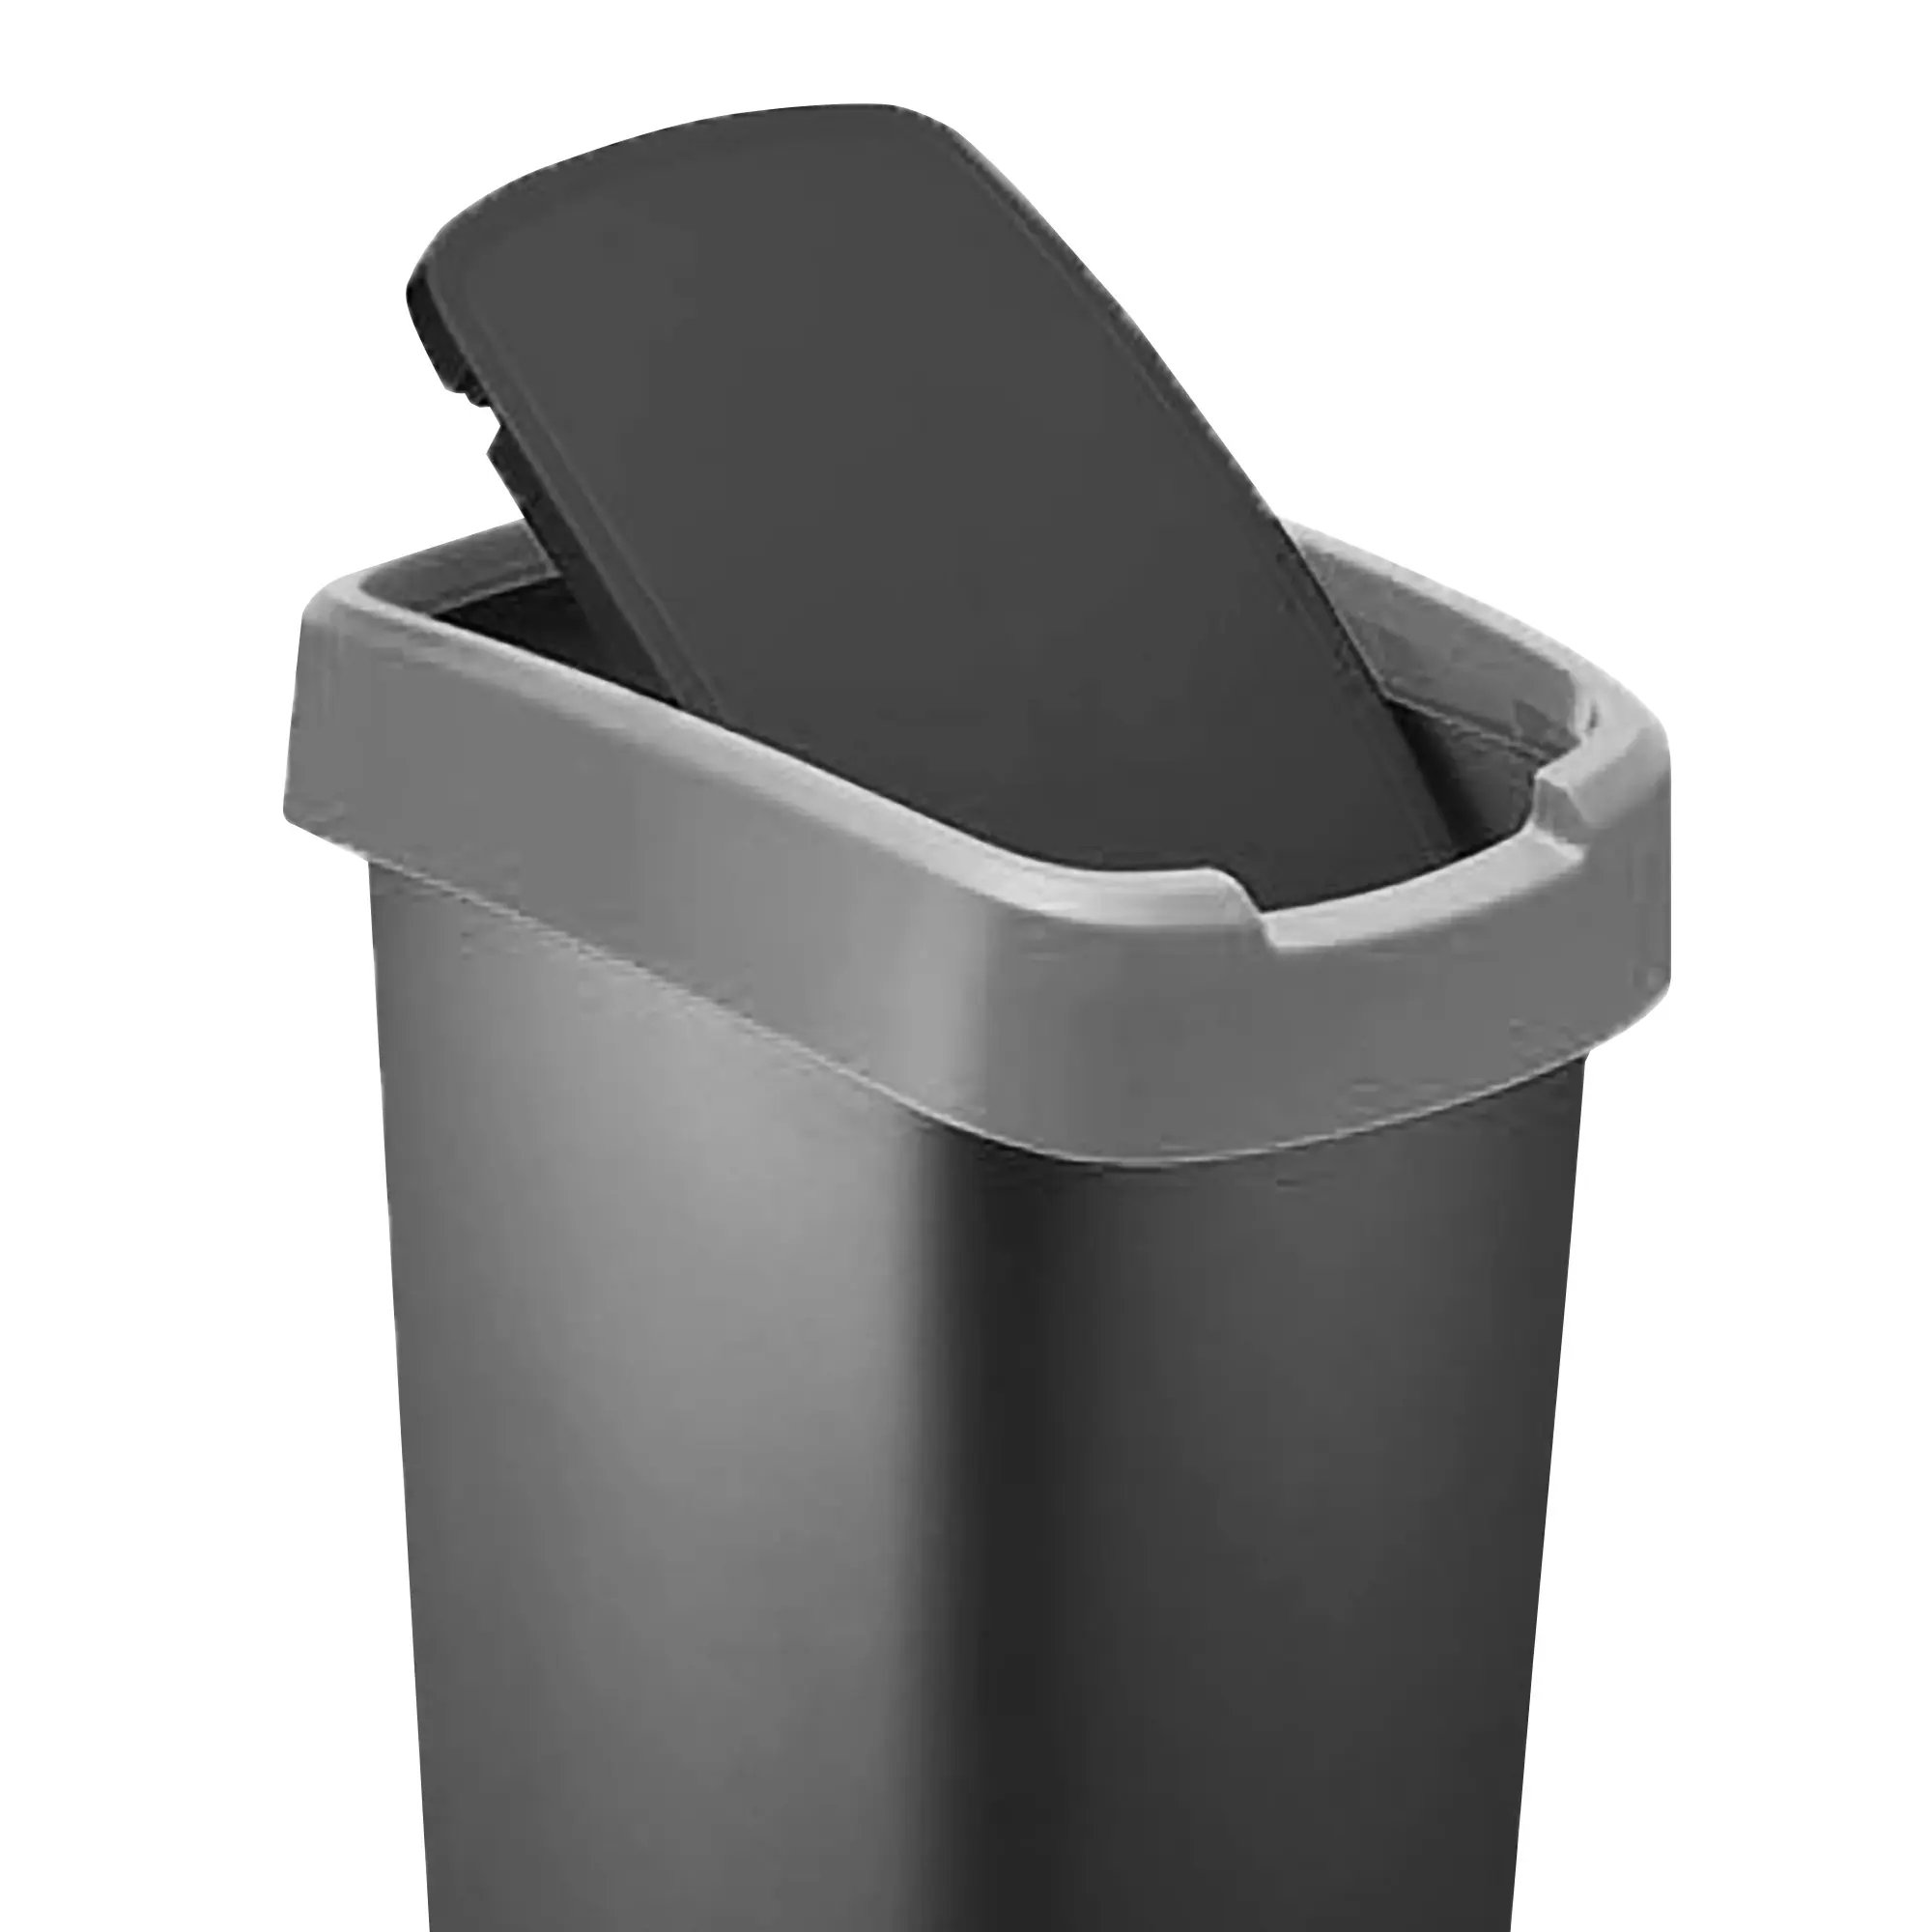 RothoPro Twist Abfallbehälter 50 Liter schwarz/silber Schwingfunktion 59135421